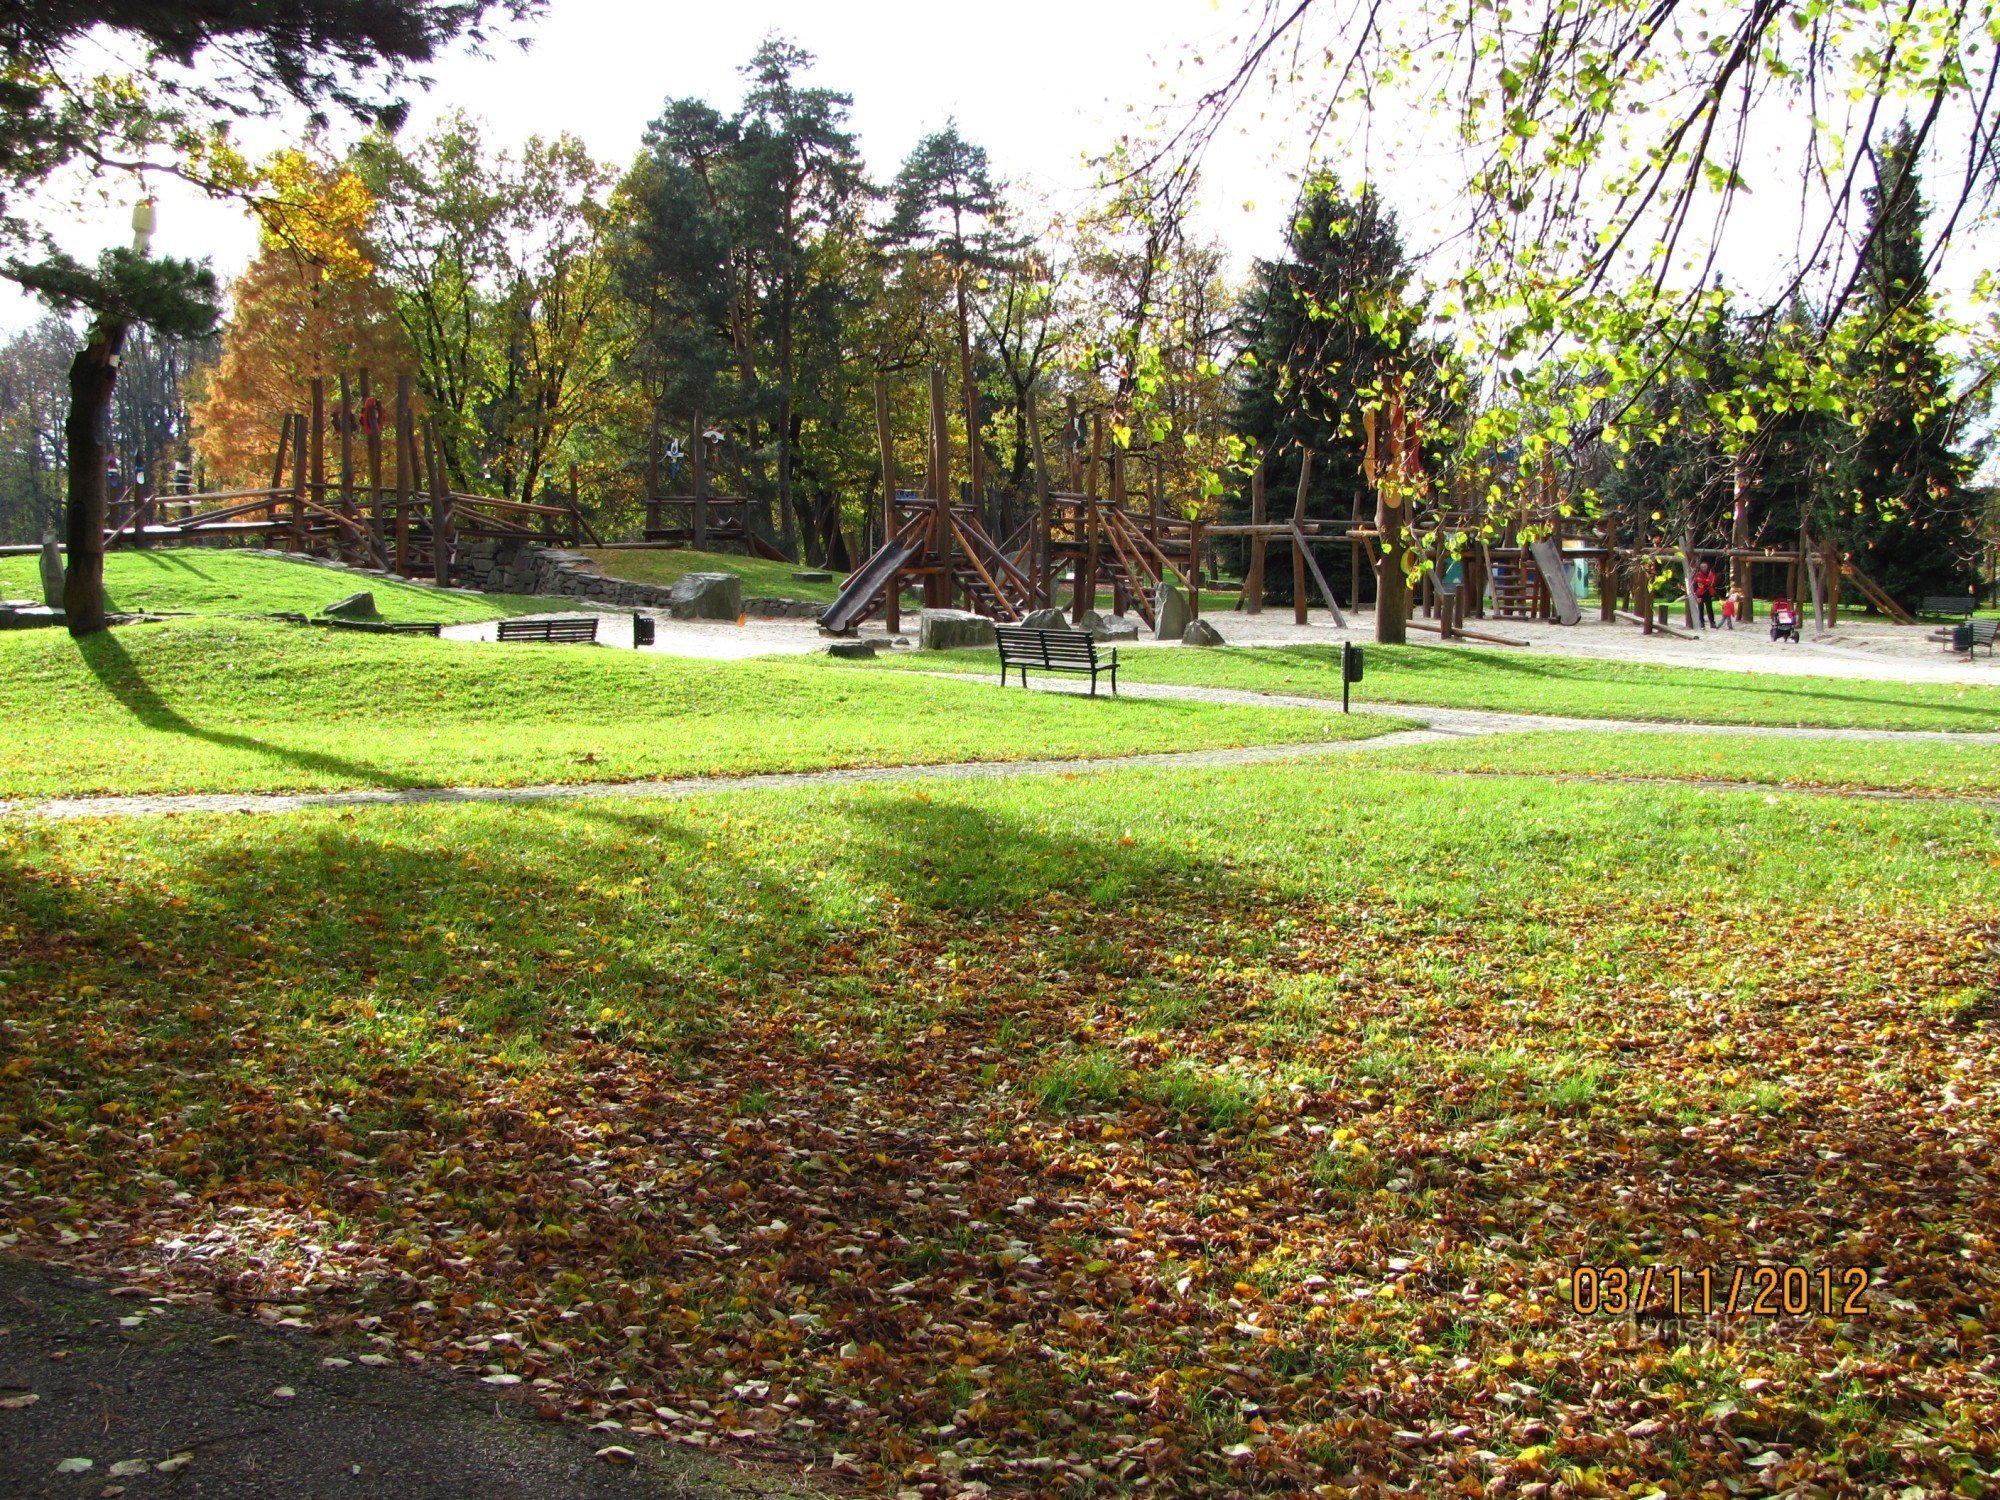 Grajski park - Park Božene Němcová v Karvini